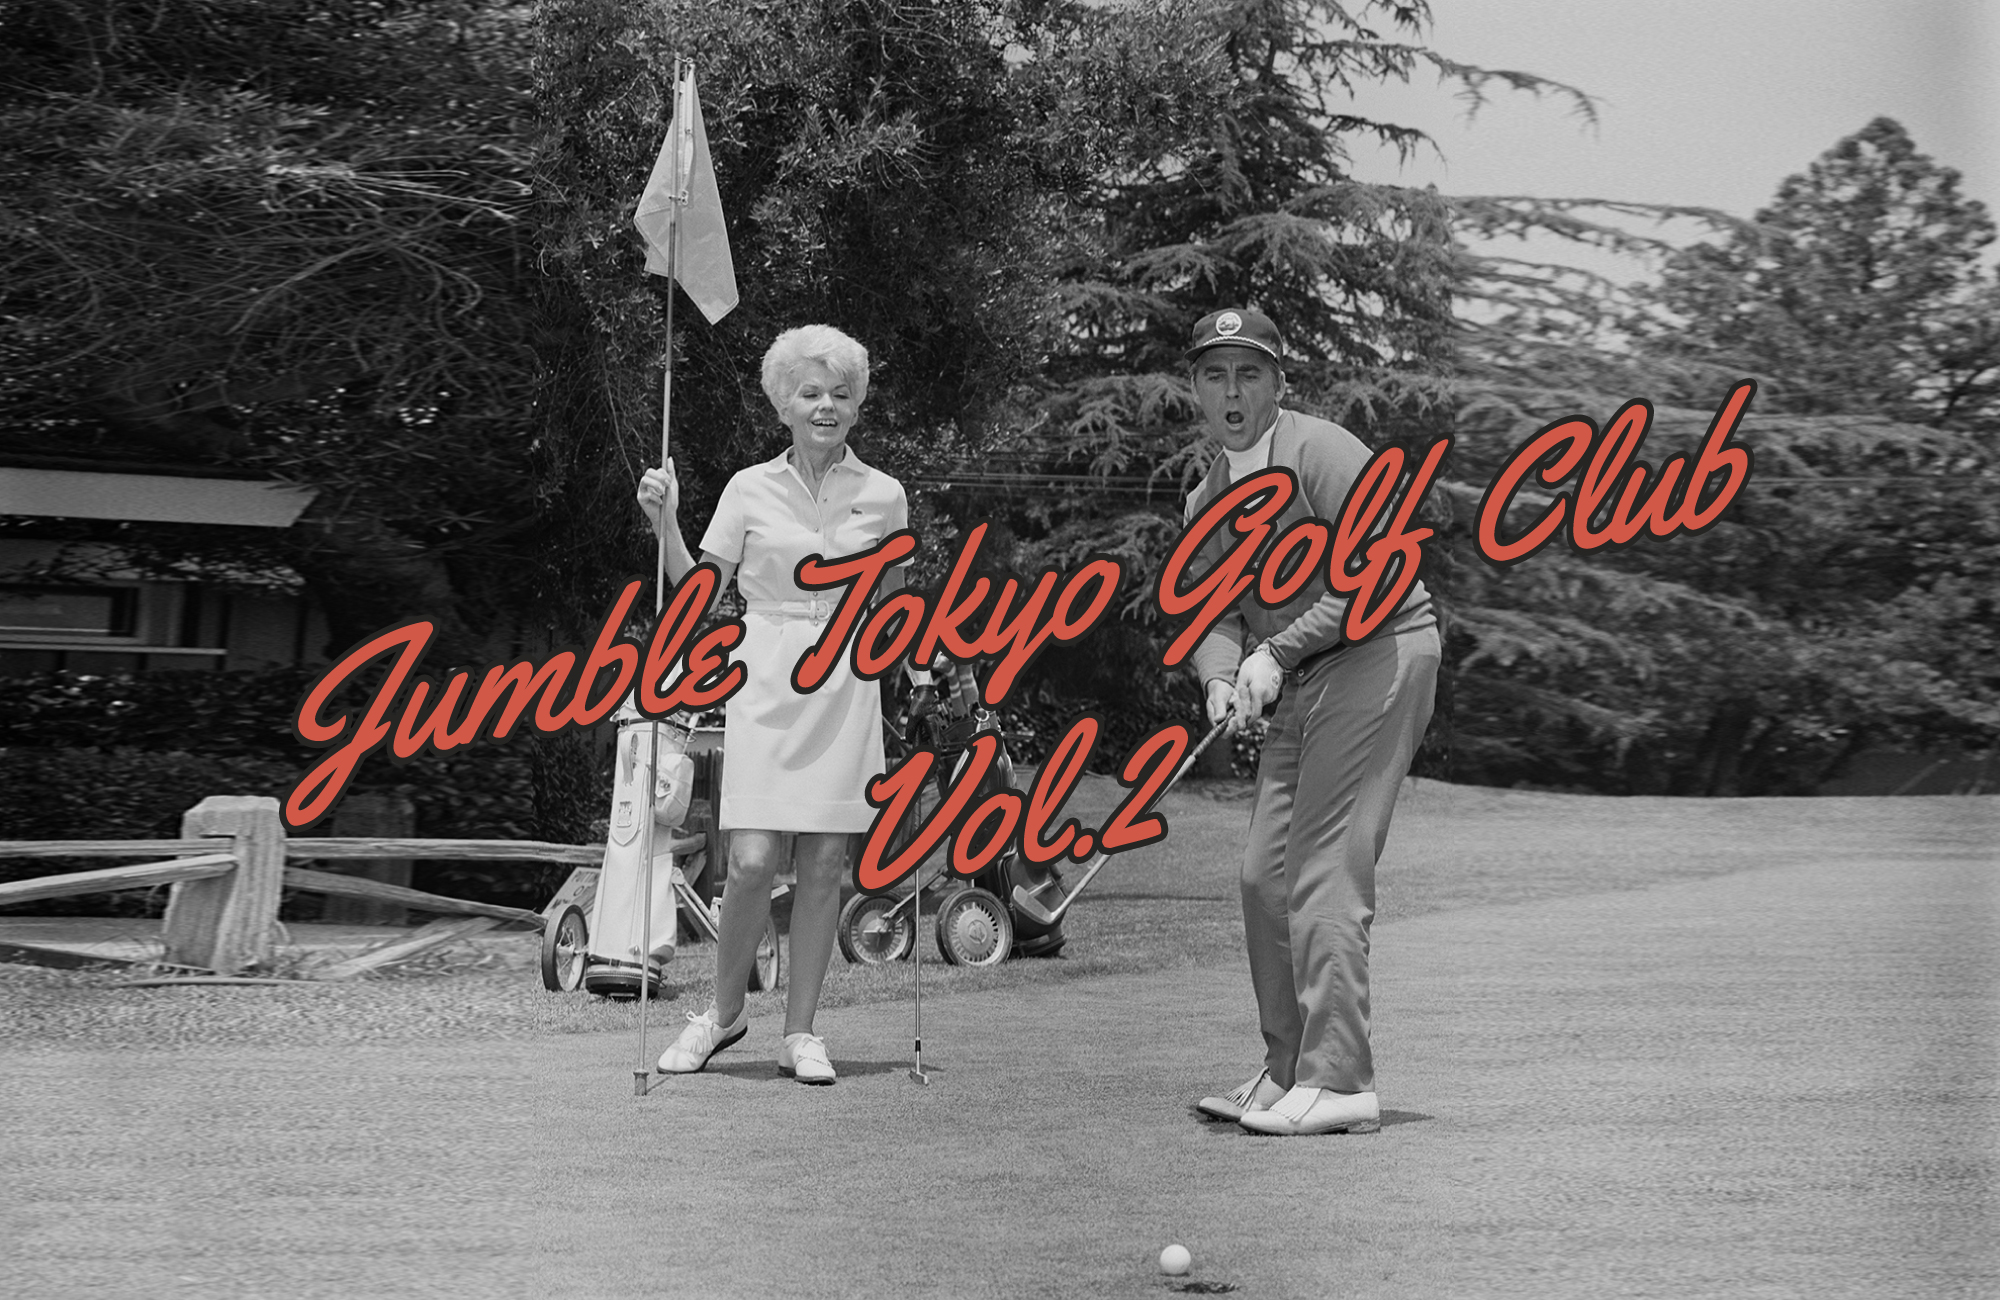 Jumble Tokyo ではコロナ禍で好調なゴルフにフォーカスして新しいゴルフスタイルを提案してきましたが、2023 Spring Summer展では雑誌[GO OUT]の別冊として今春出版して大きな話題となった[GOLF OUT]のディレクションコーナーが登場します。全てのゴルフファンに向けた新しいライフスタイル雑誌が今秋の発売に先駆けてセレクトしたブランドを展示して新たなゴルフシーンの世界観をお見せします。